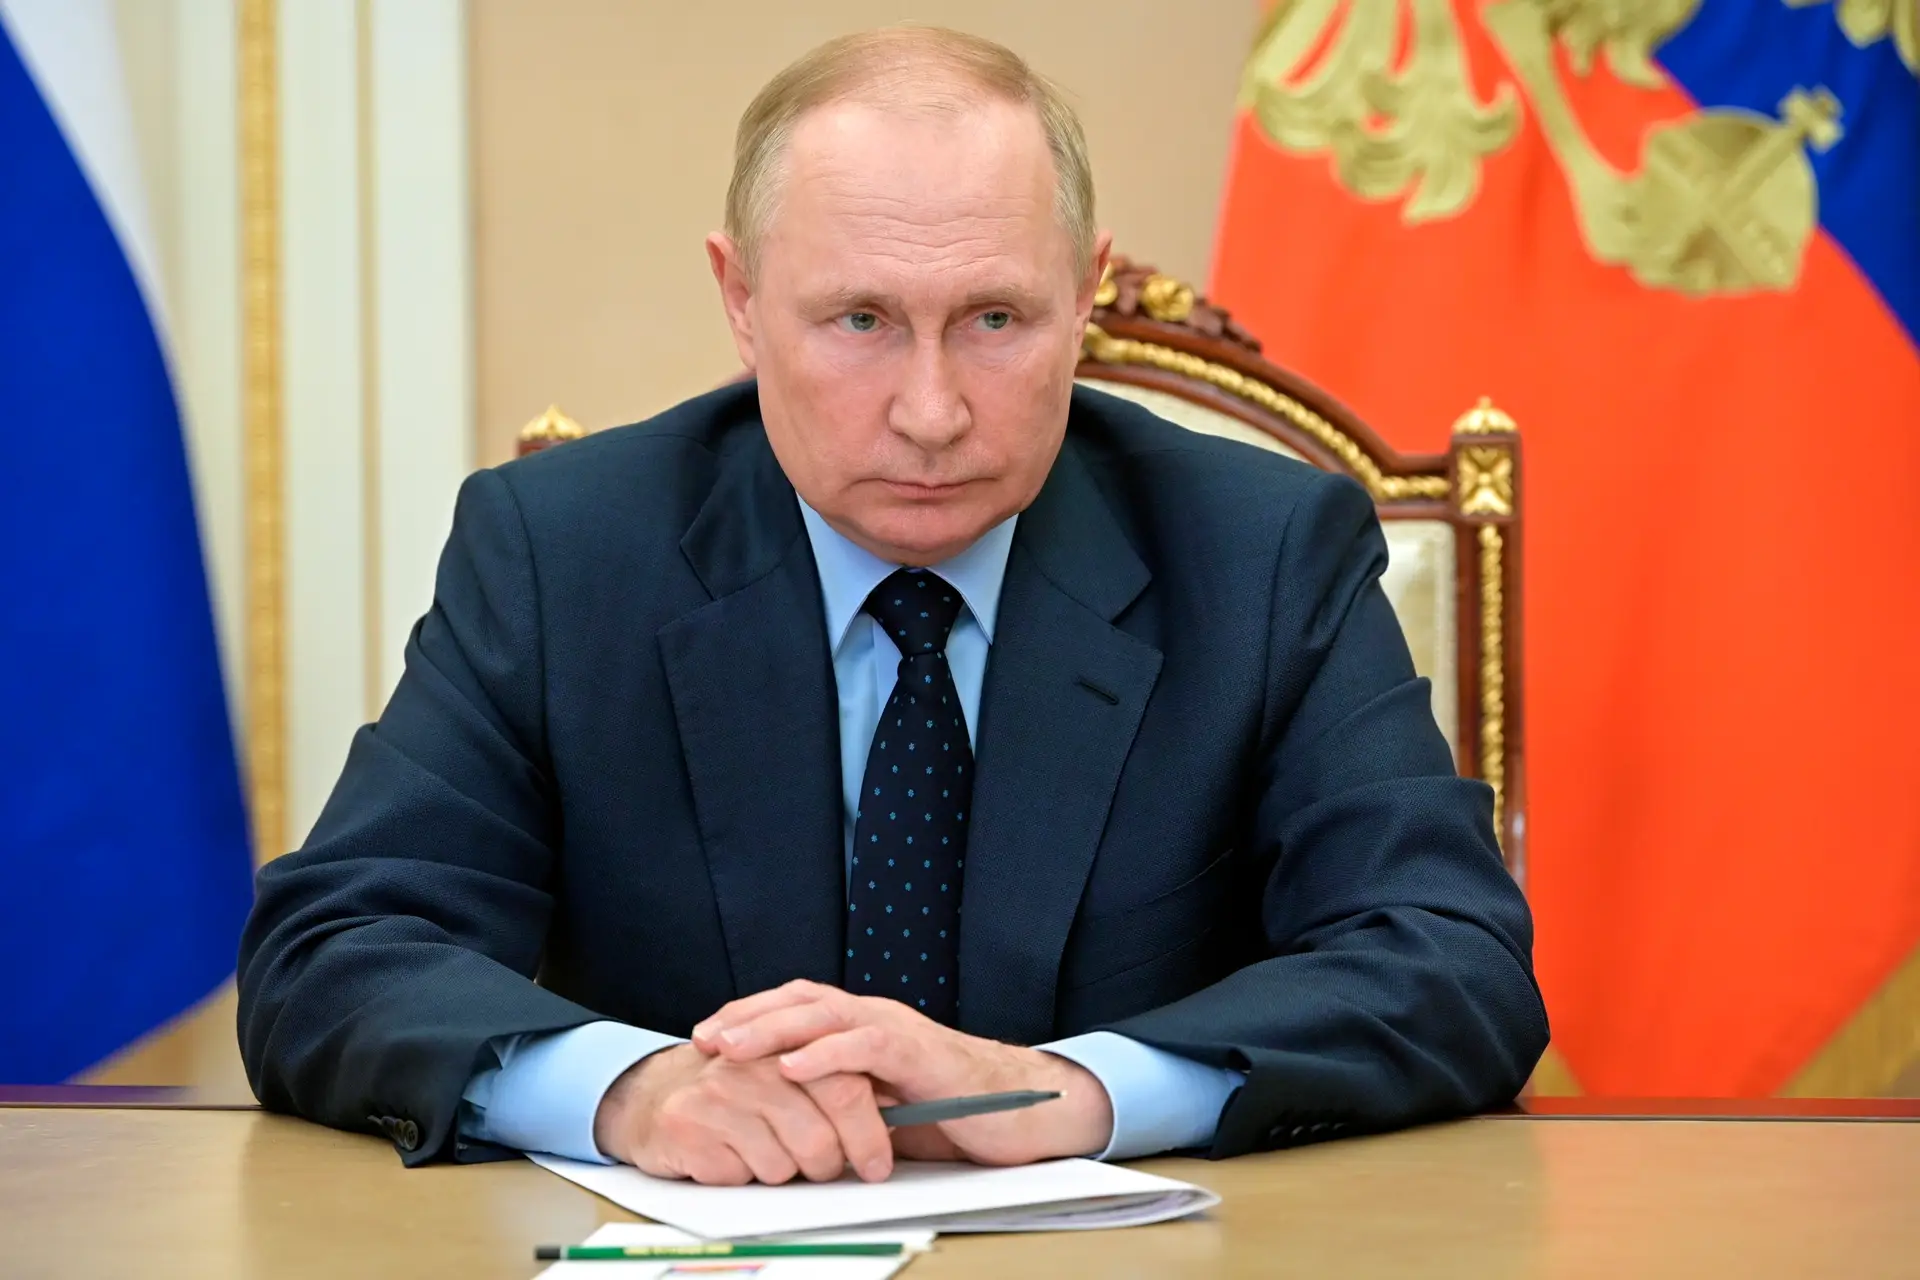 Putin acusa Washington de prolongar conflito na Ucrânia e desestabilizar o mundo